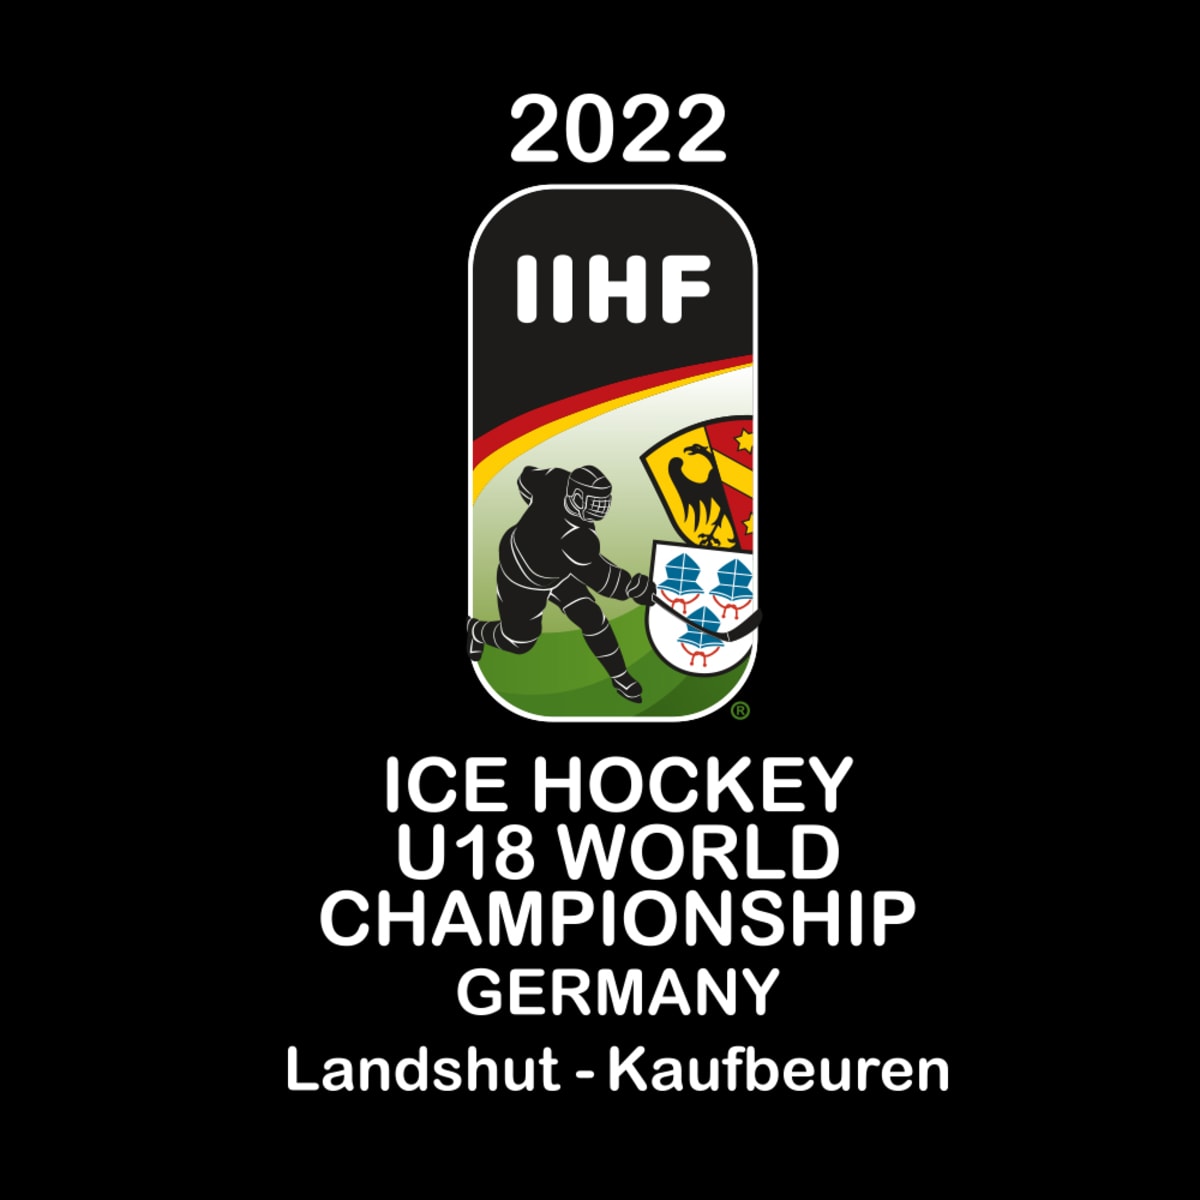 Irish Ice Hockey Association 🇮🇪 (@IIHA) / X